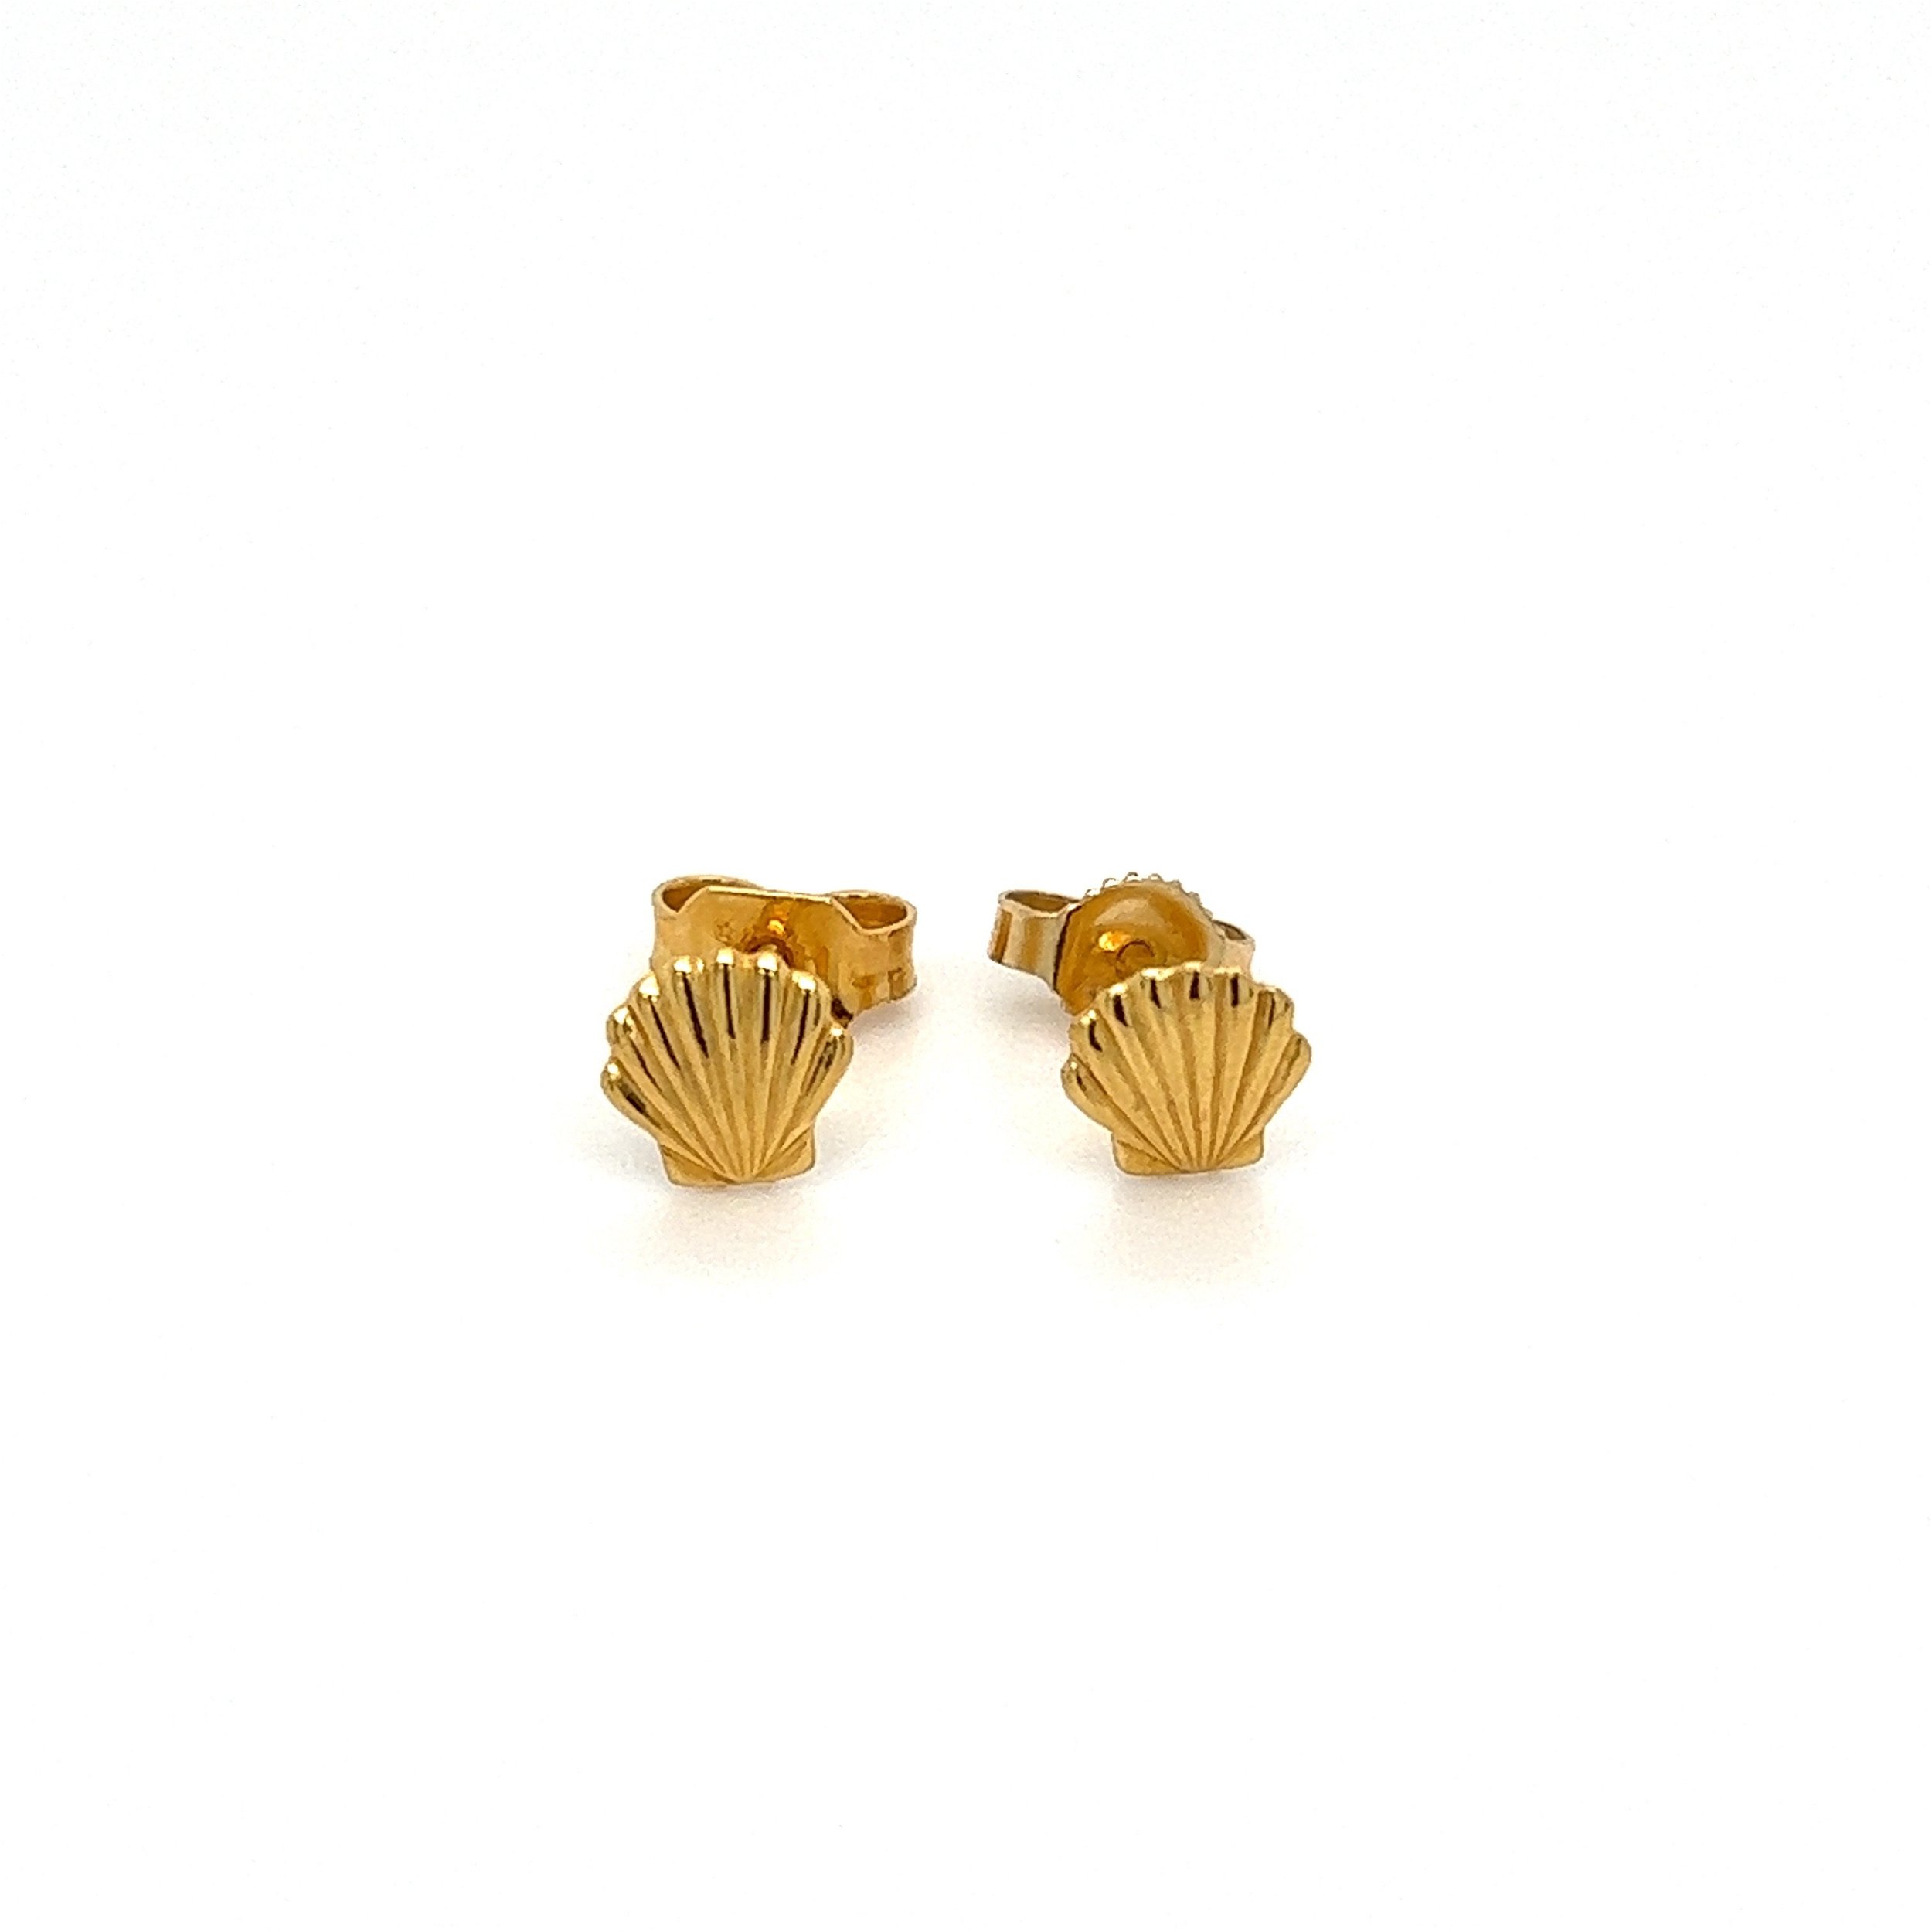 18K YG Petite Gold Shell Stud Earrings .8g, 6mm 1 back is 14K